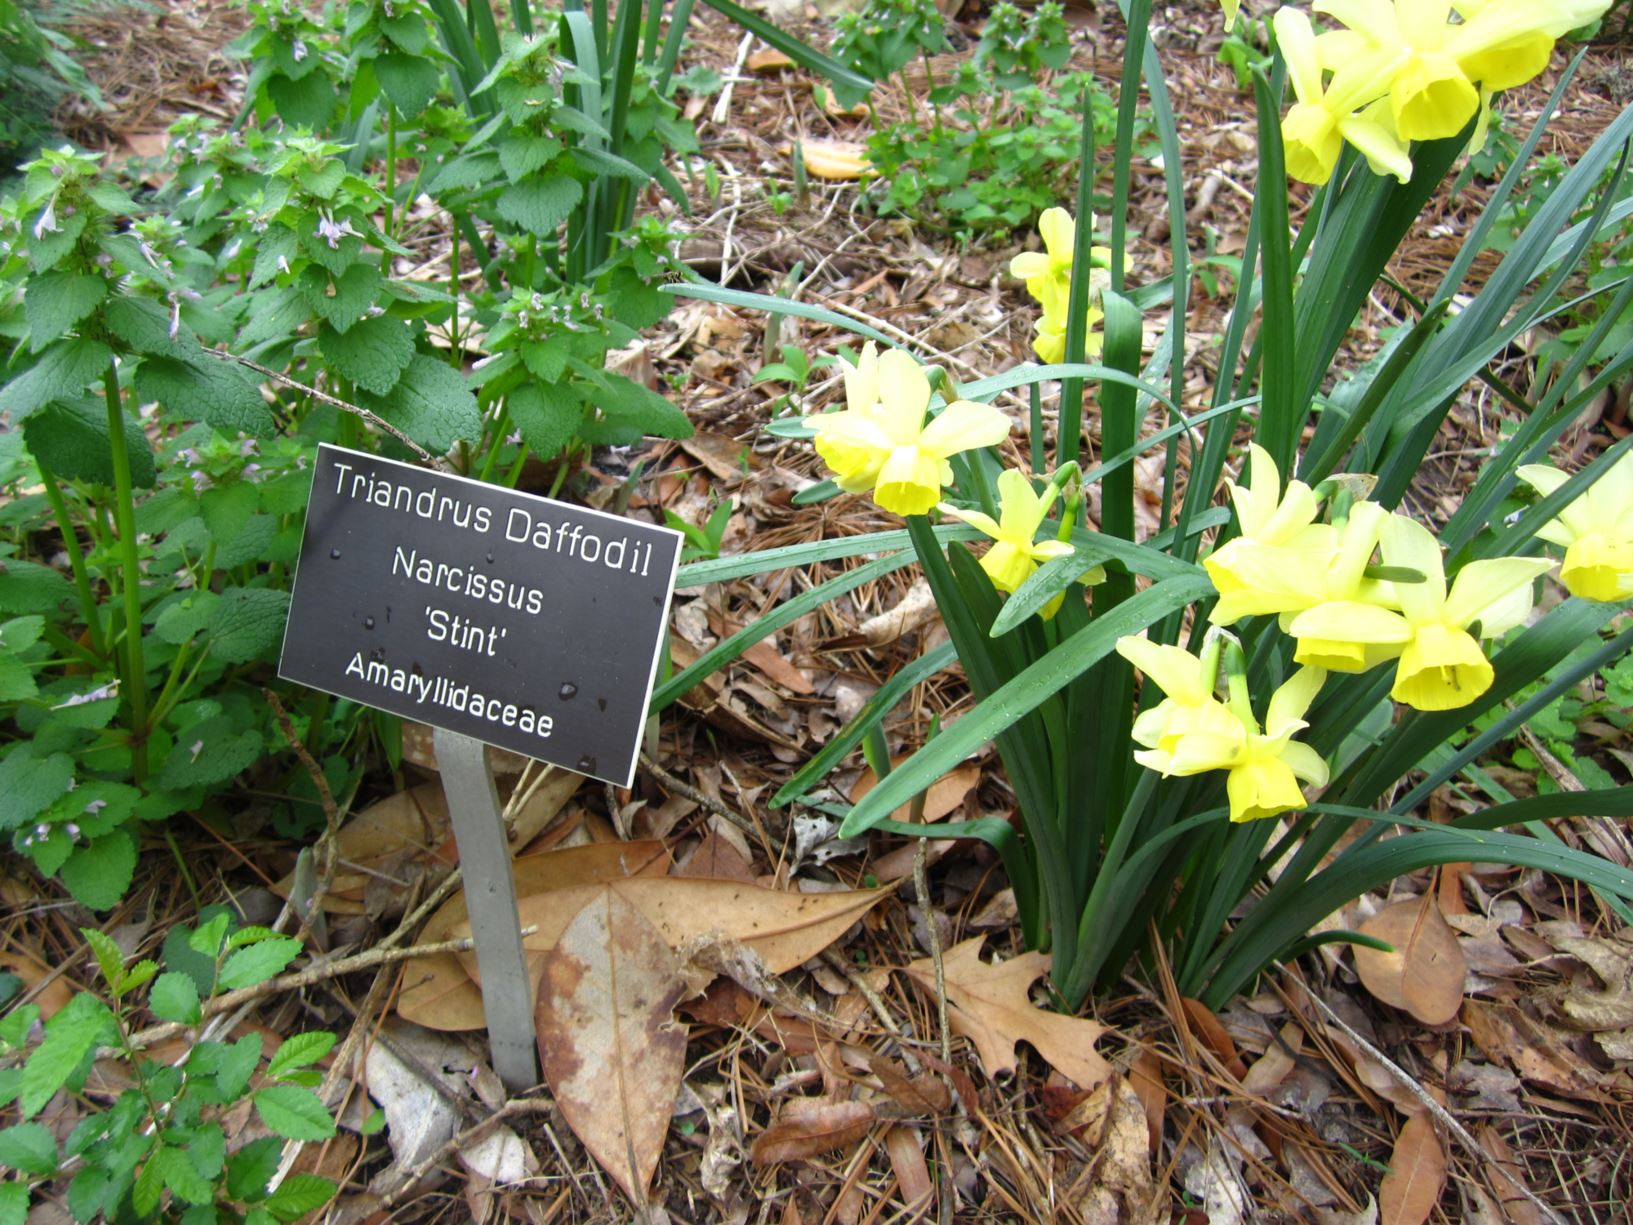 Narcissus 'Stint' - triandrus daffodil